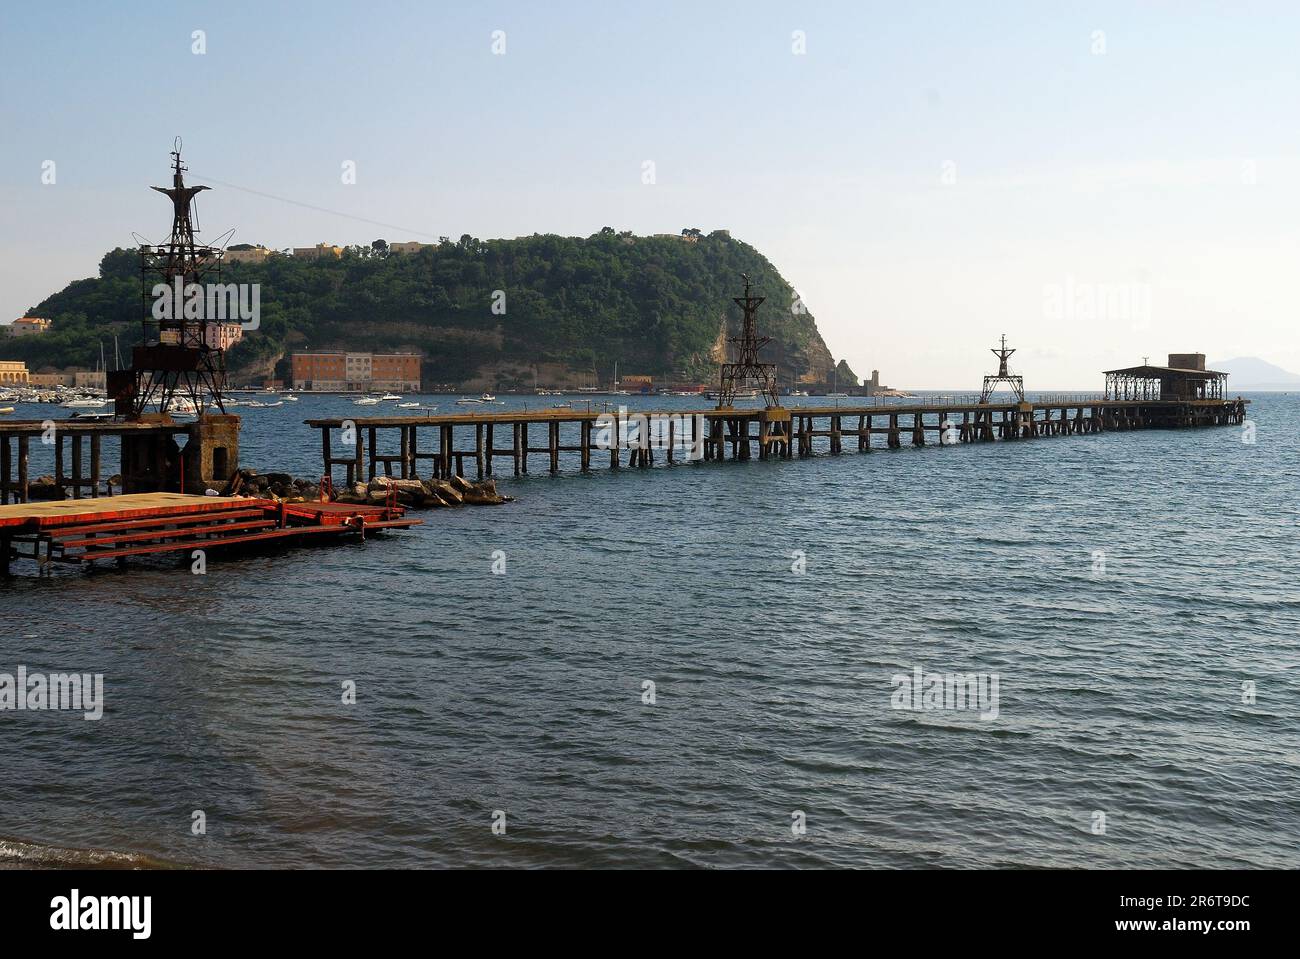 Napoli, Italia. L'isola di Nisida. In primo piano, il ponte rovinato della acciaieria Italsider dopo la chiusura della fabbrica. Foto Stock